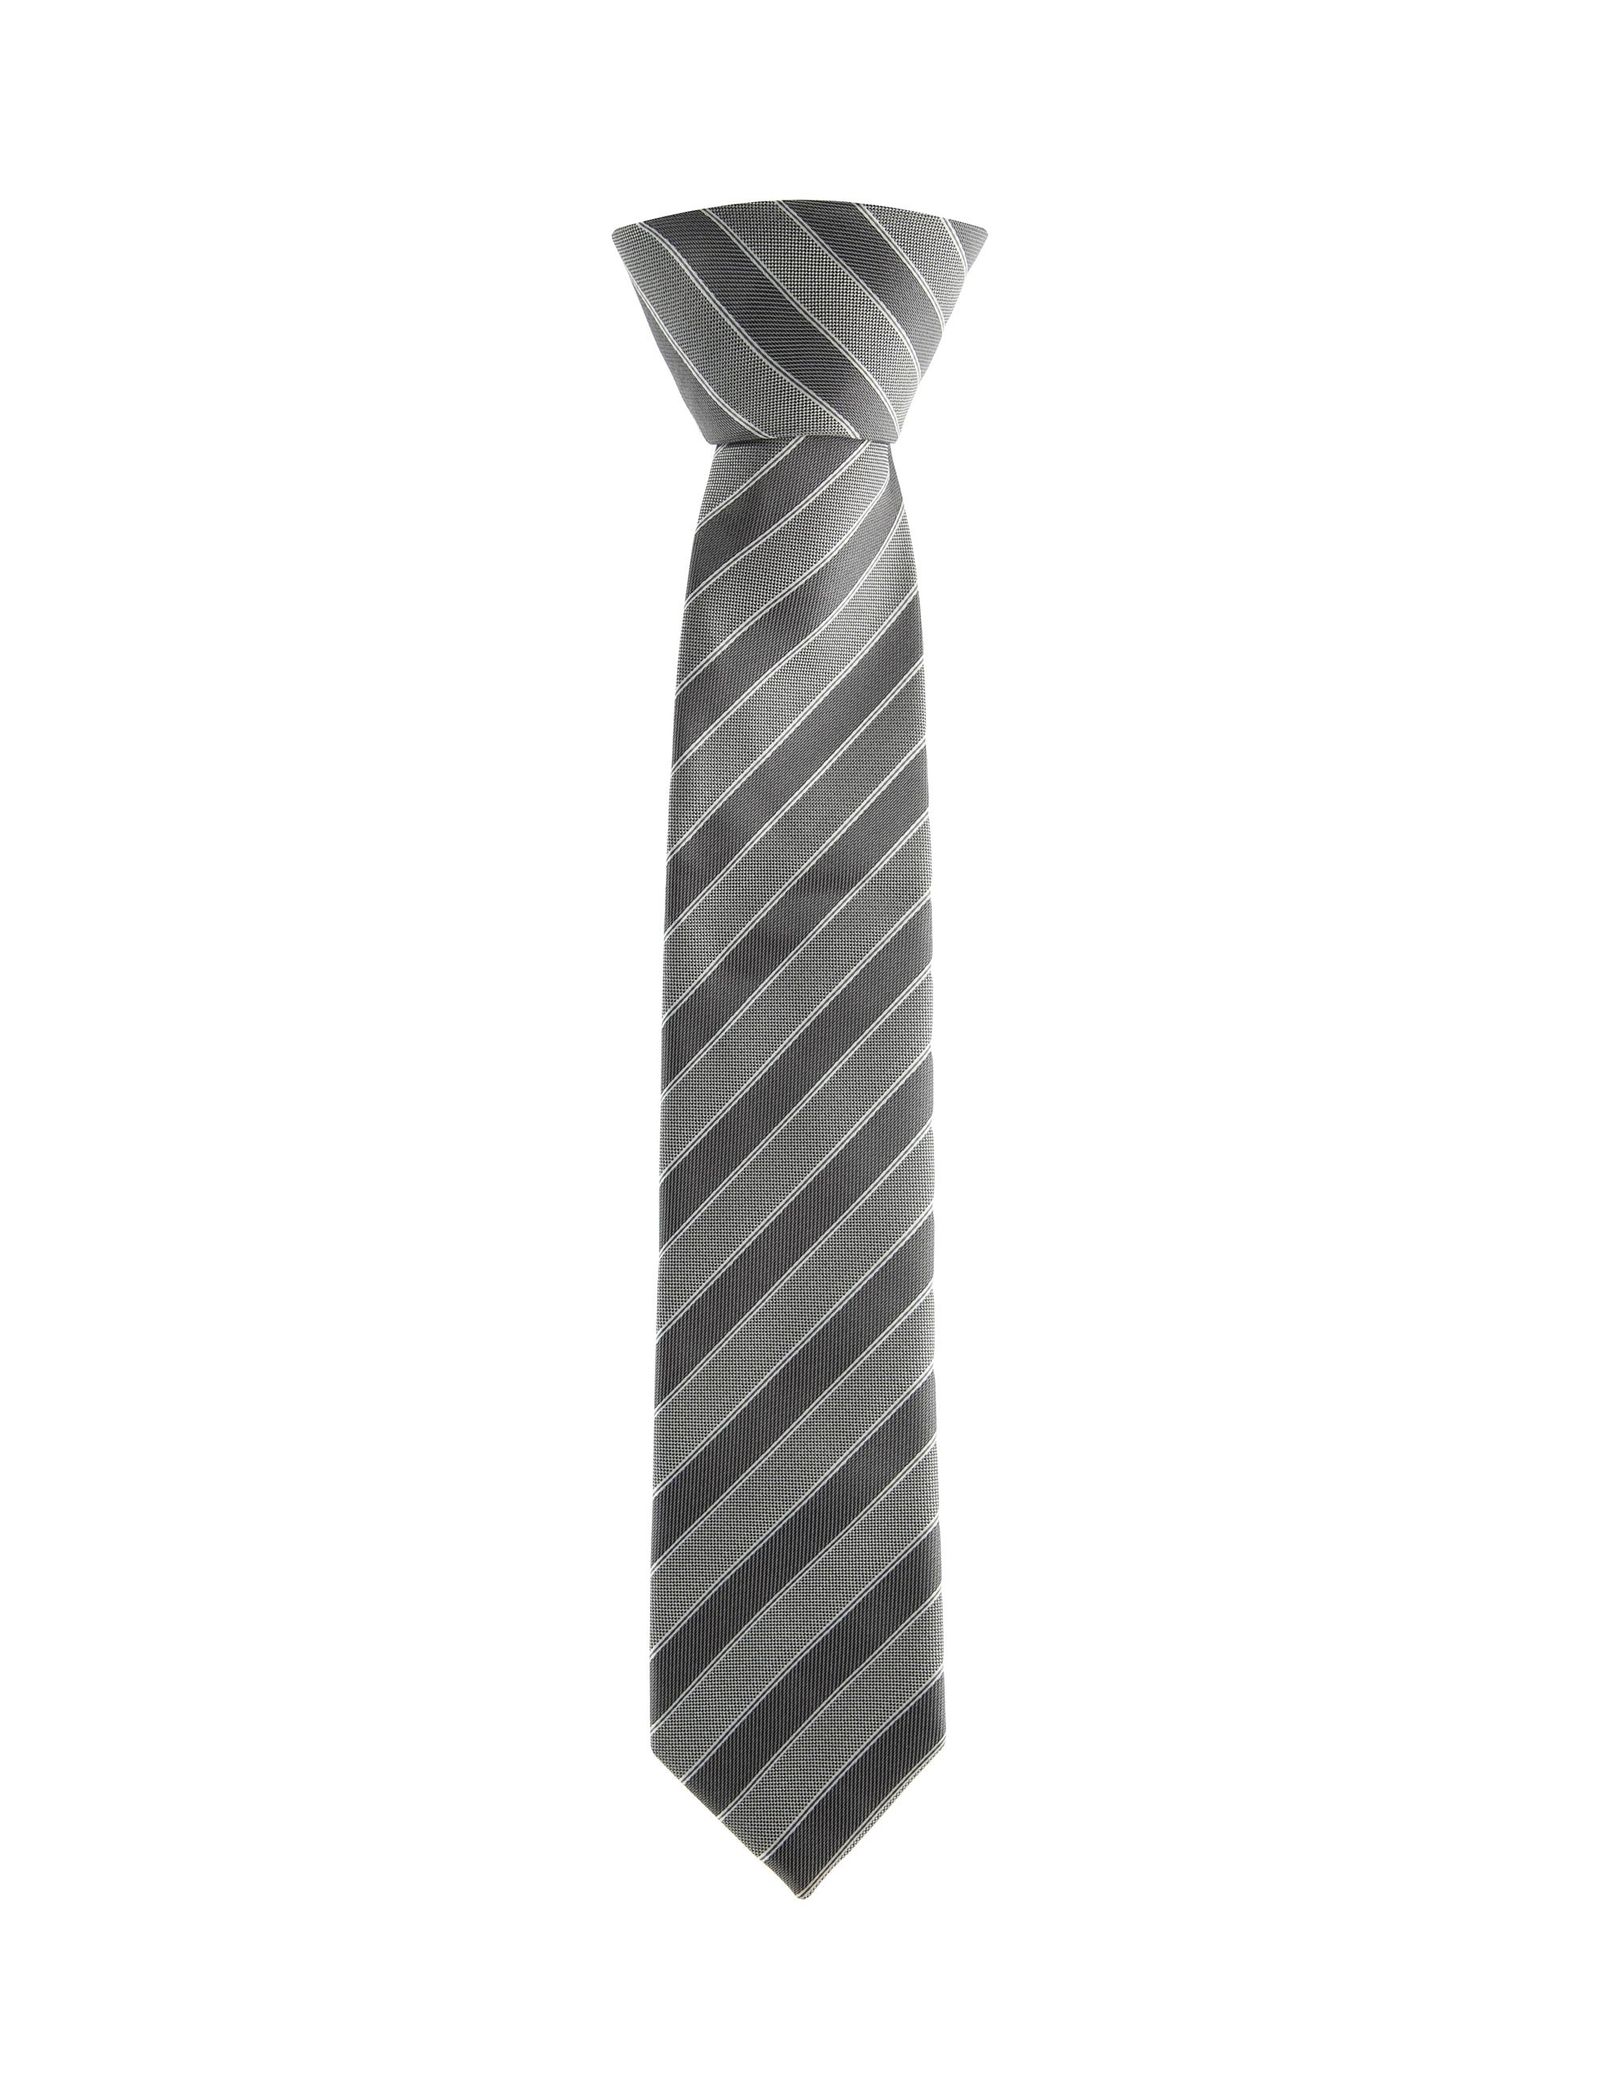 کراوات طرح دار مردانه - یوپیم - طوسي - 2